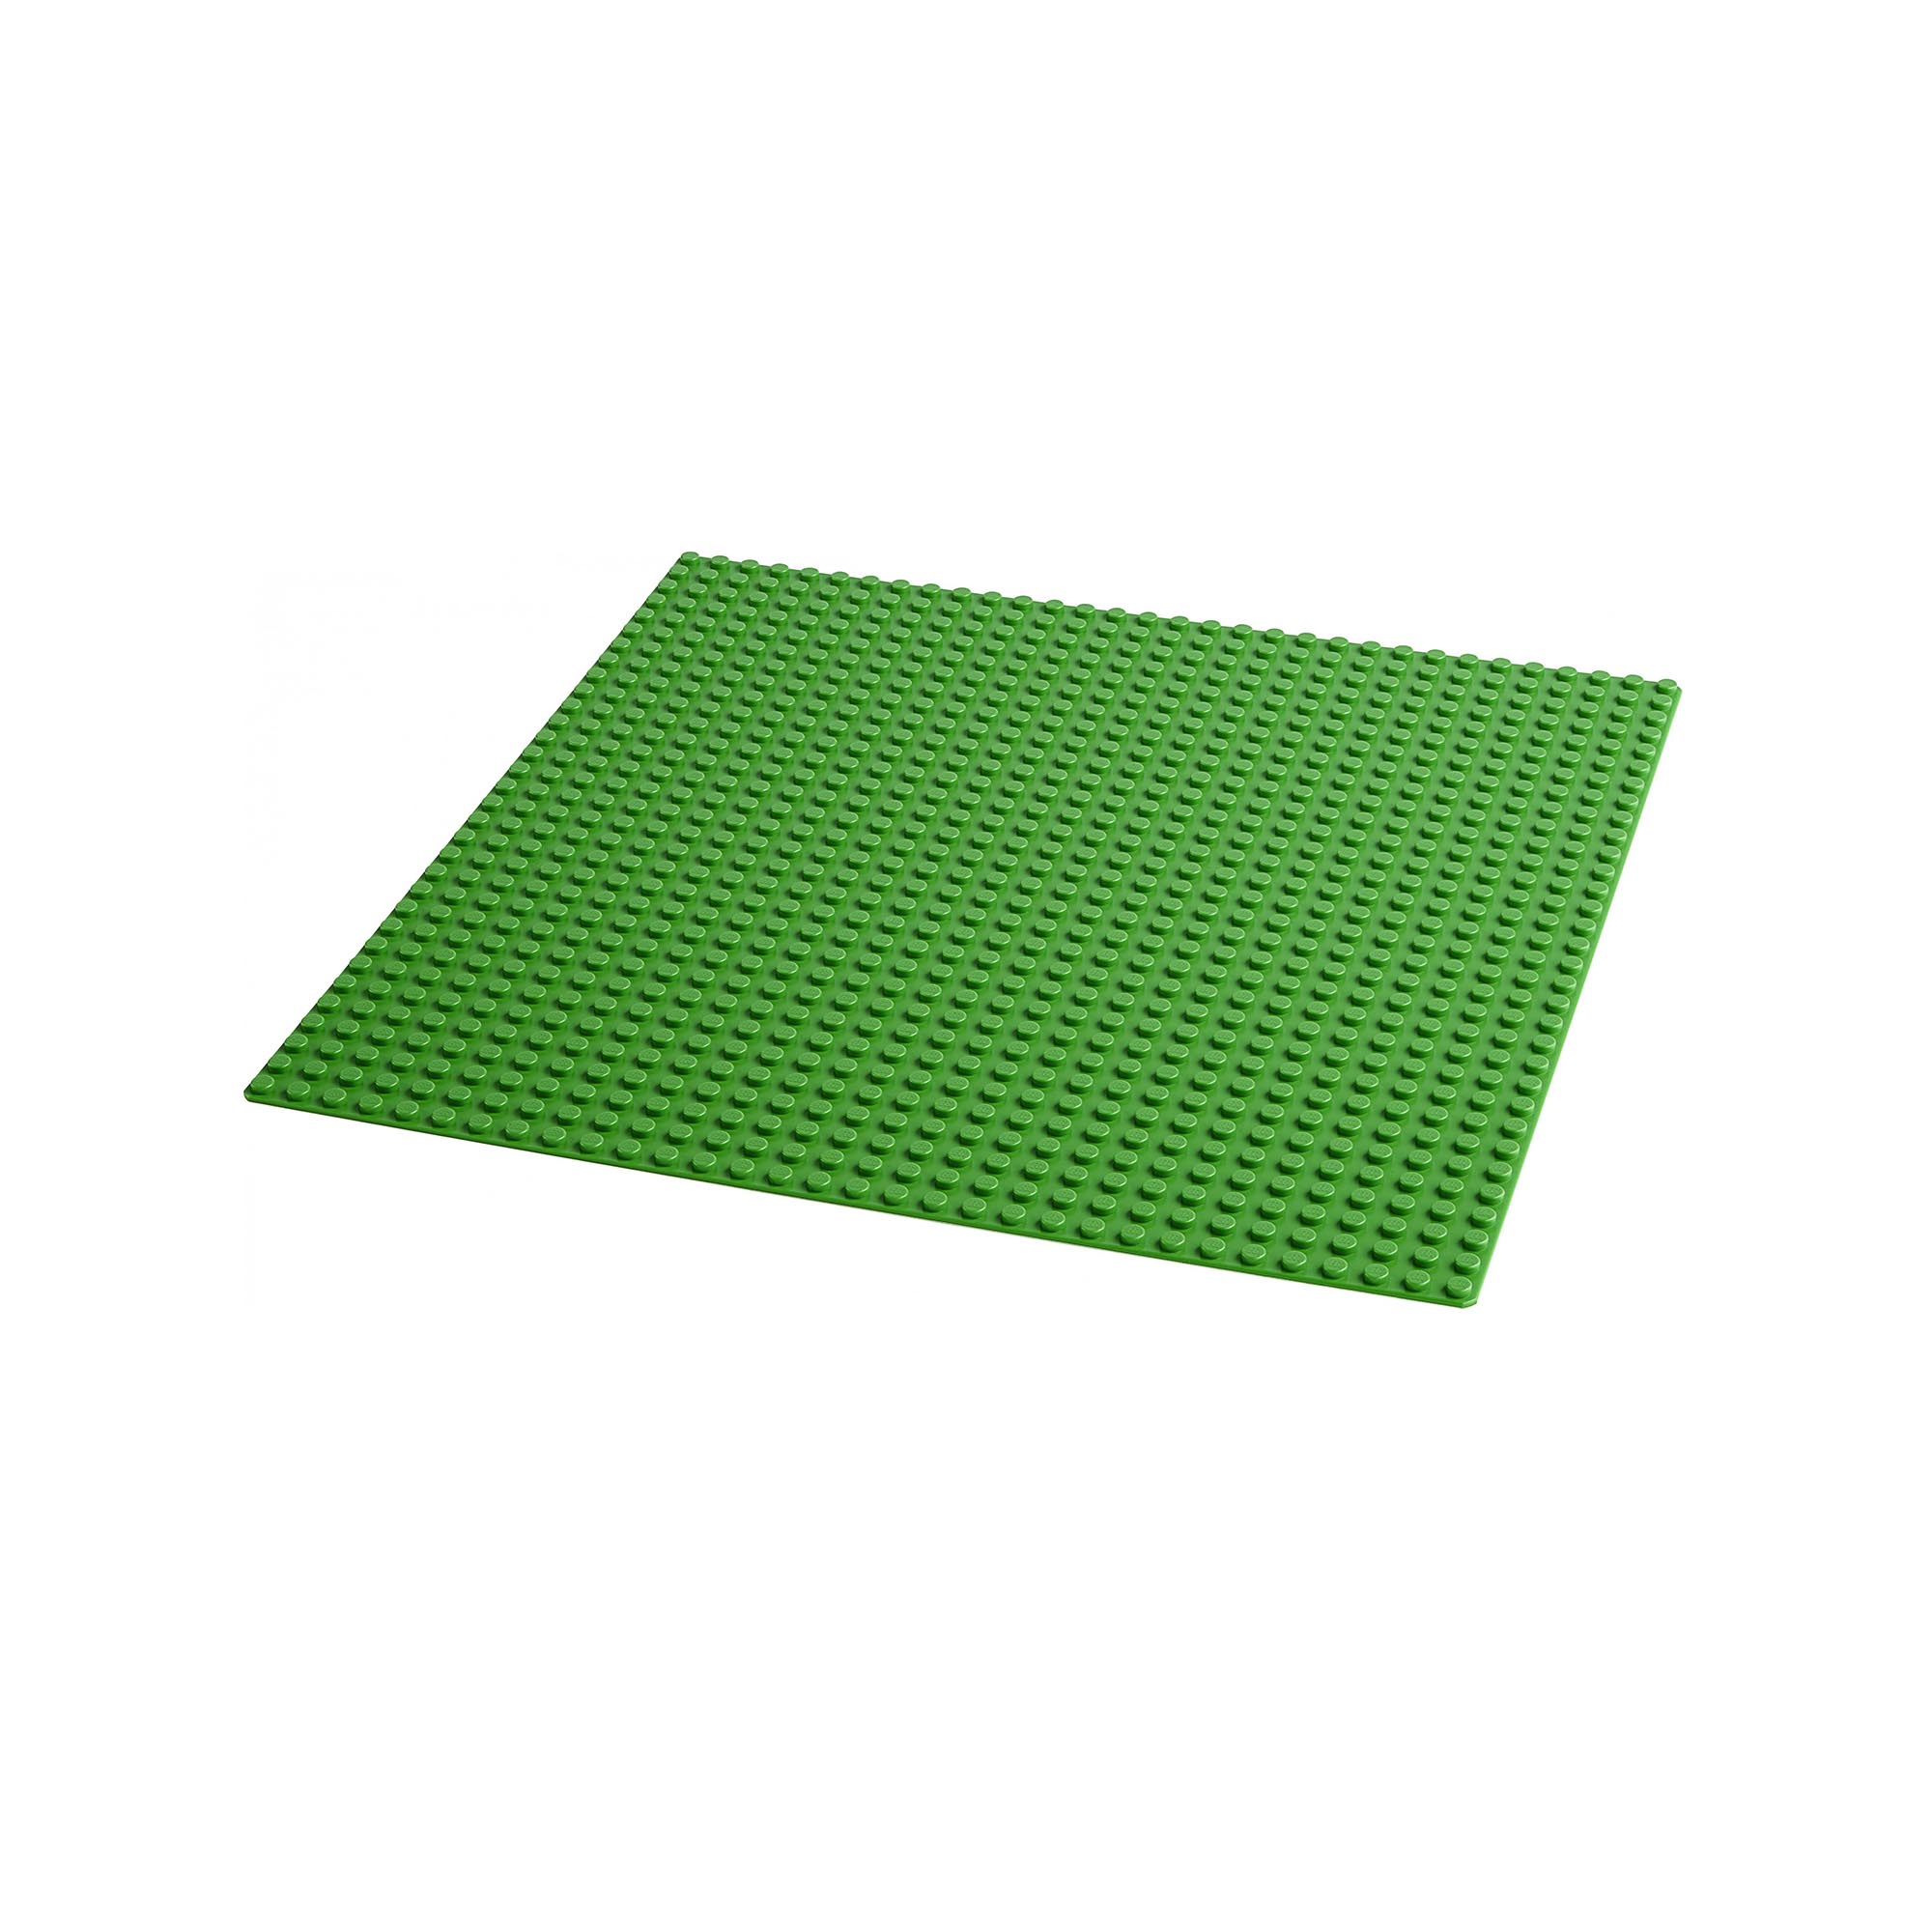 LEGO 11023 Classic Base Verde, Tavola per Costruzioni Quadrata con 32x32 Bottonc 11023, , large